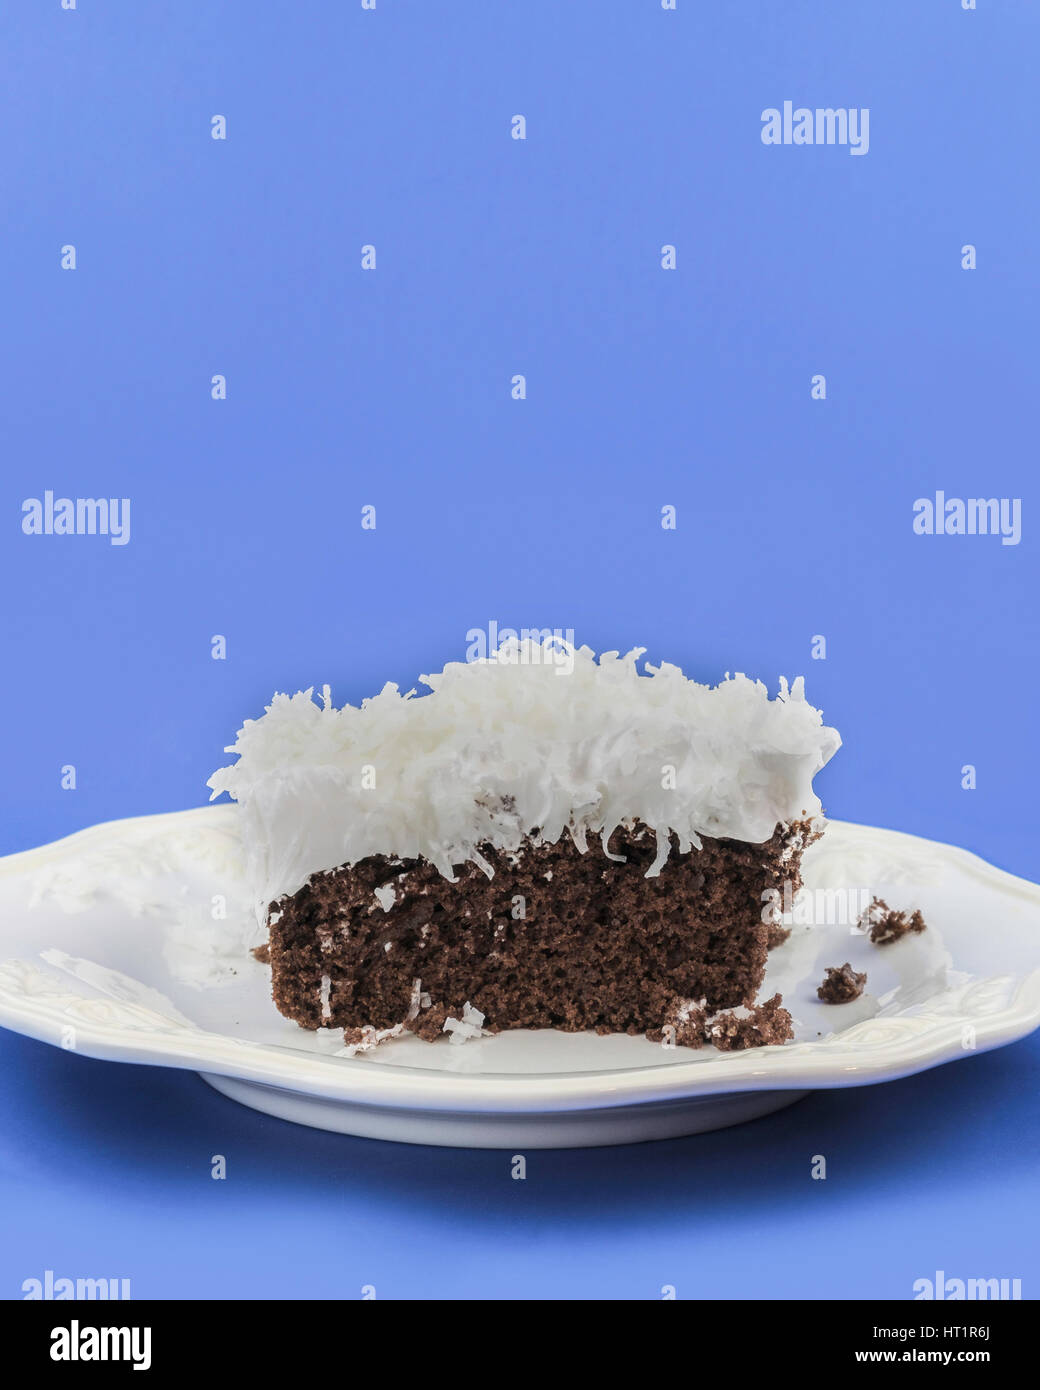 Ein Stück Schokoladenkuchen mit flauschigen weißen Zuckerguss garniert mit Shreded Kokosnuss auf einem weißen Teller. Oklahoma, USA. Stockfoto